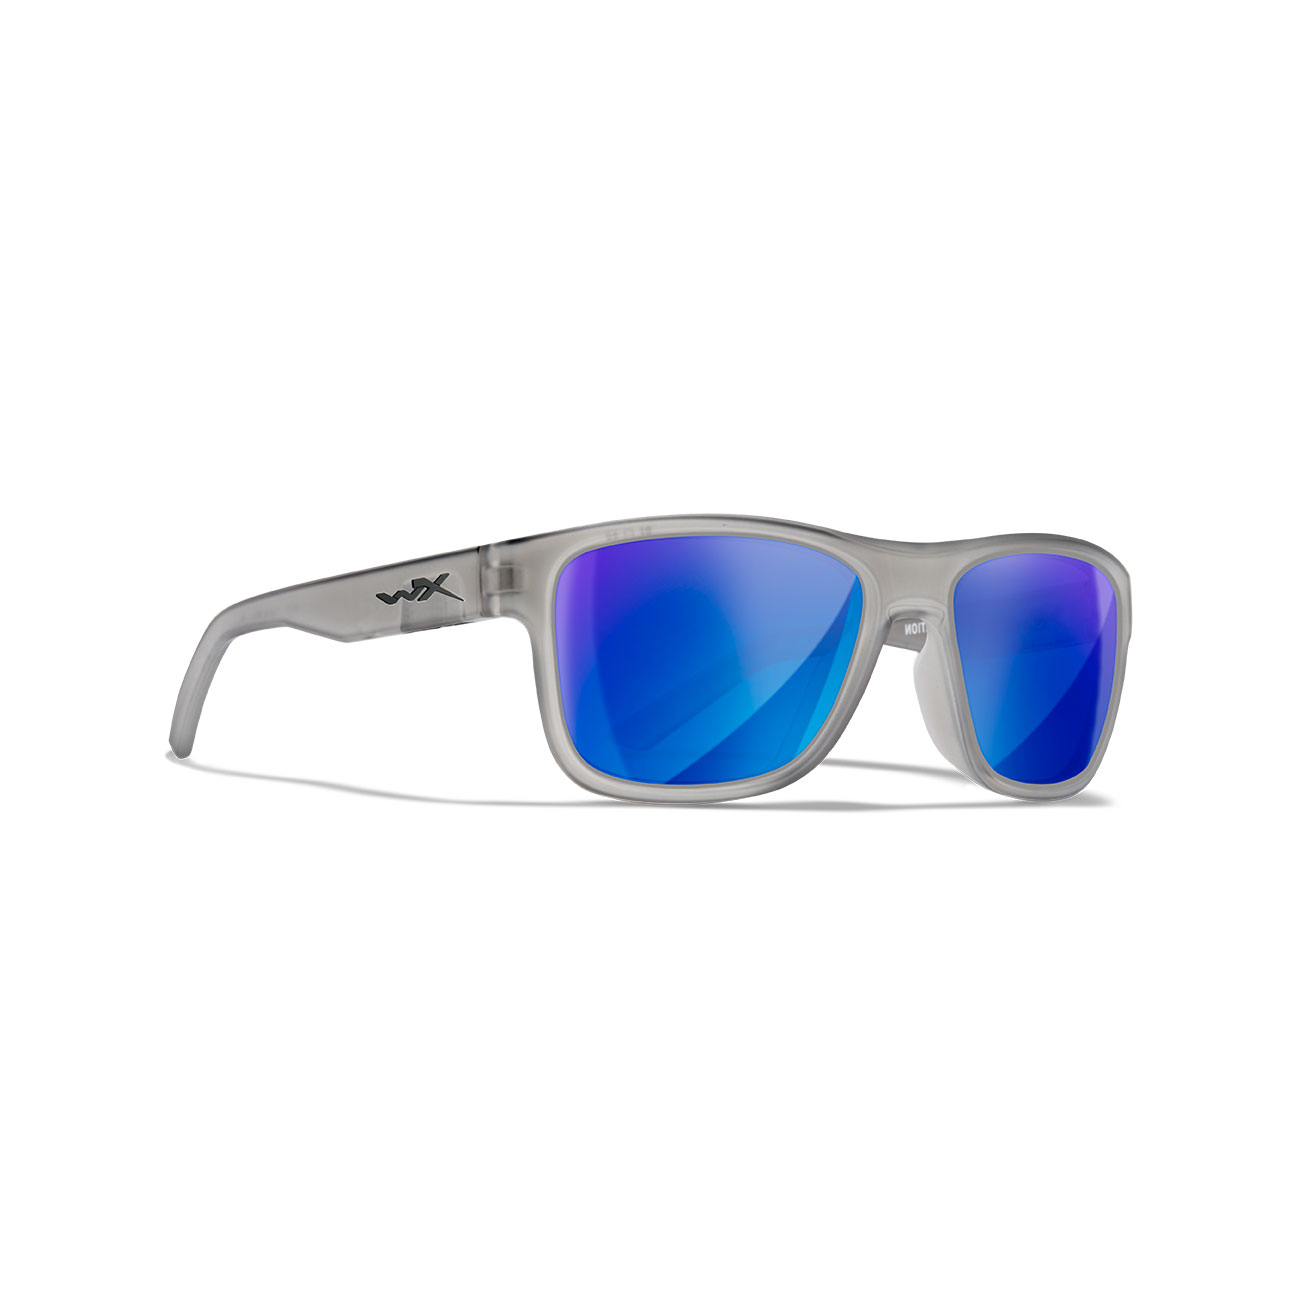 Wiley X Sonnenbrille Ovation Captivate matt transparent grau Glser blau verspiegelt polarisiert inkl. Brillenetui und Seitensch Bild 4